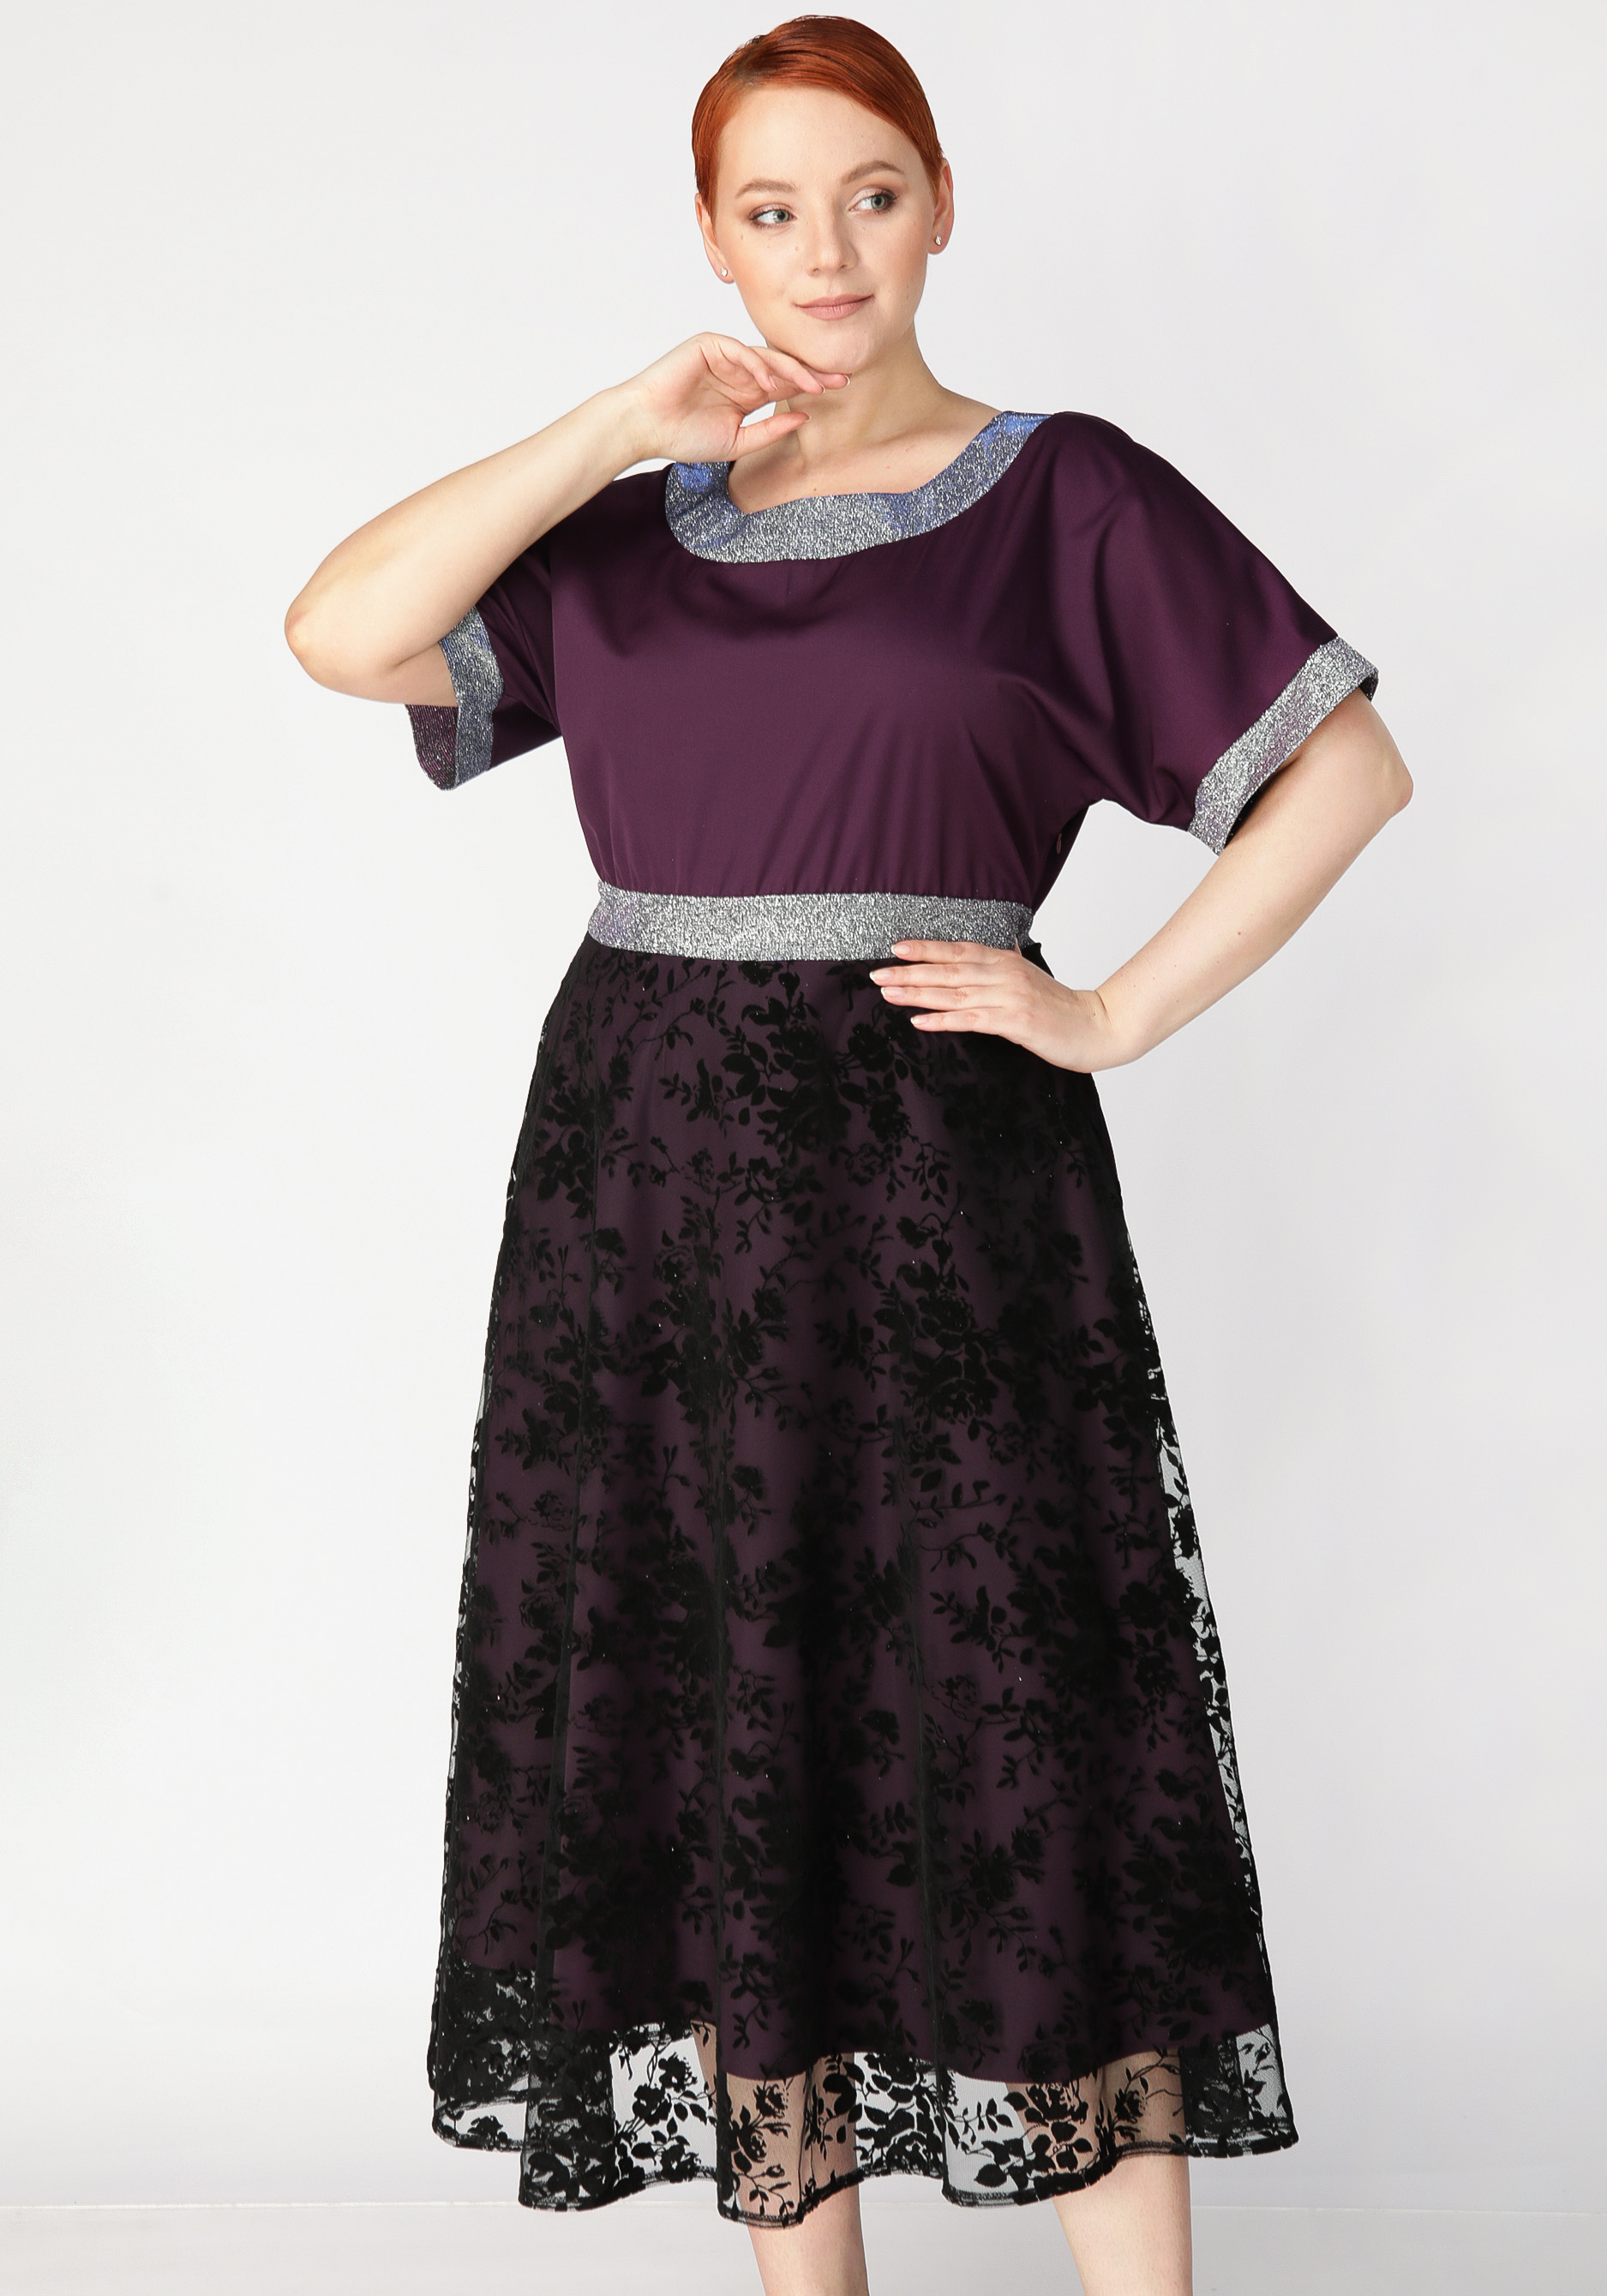 Платье с объемным принтом Mio Imperatrice, цвет баклажановый, размер 54 - фото 2